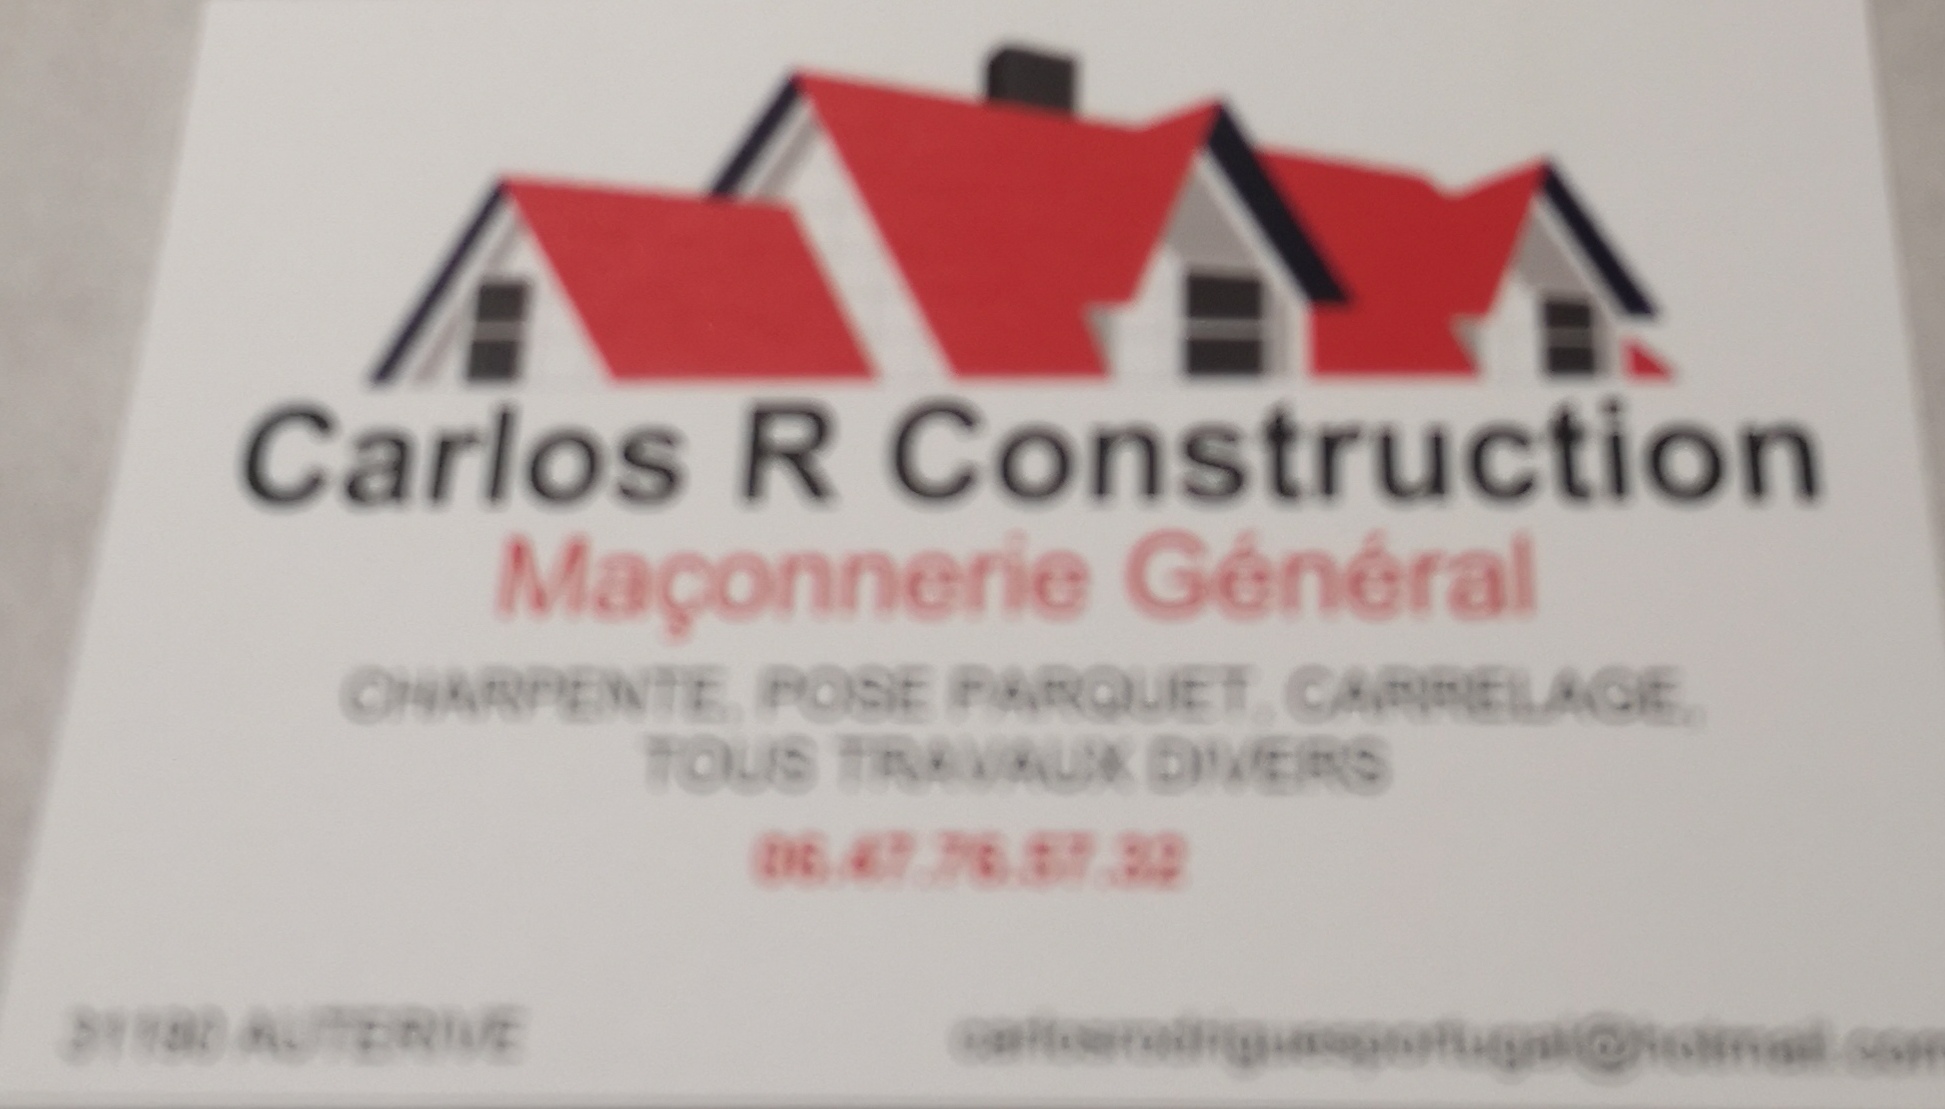 Carlos M construction